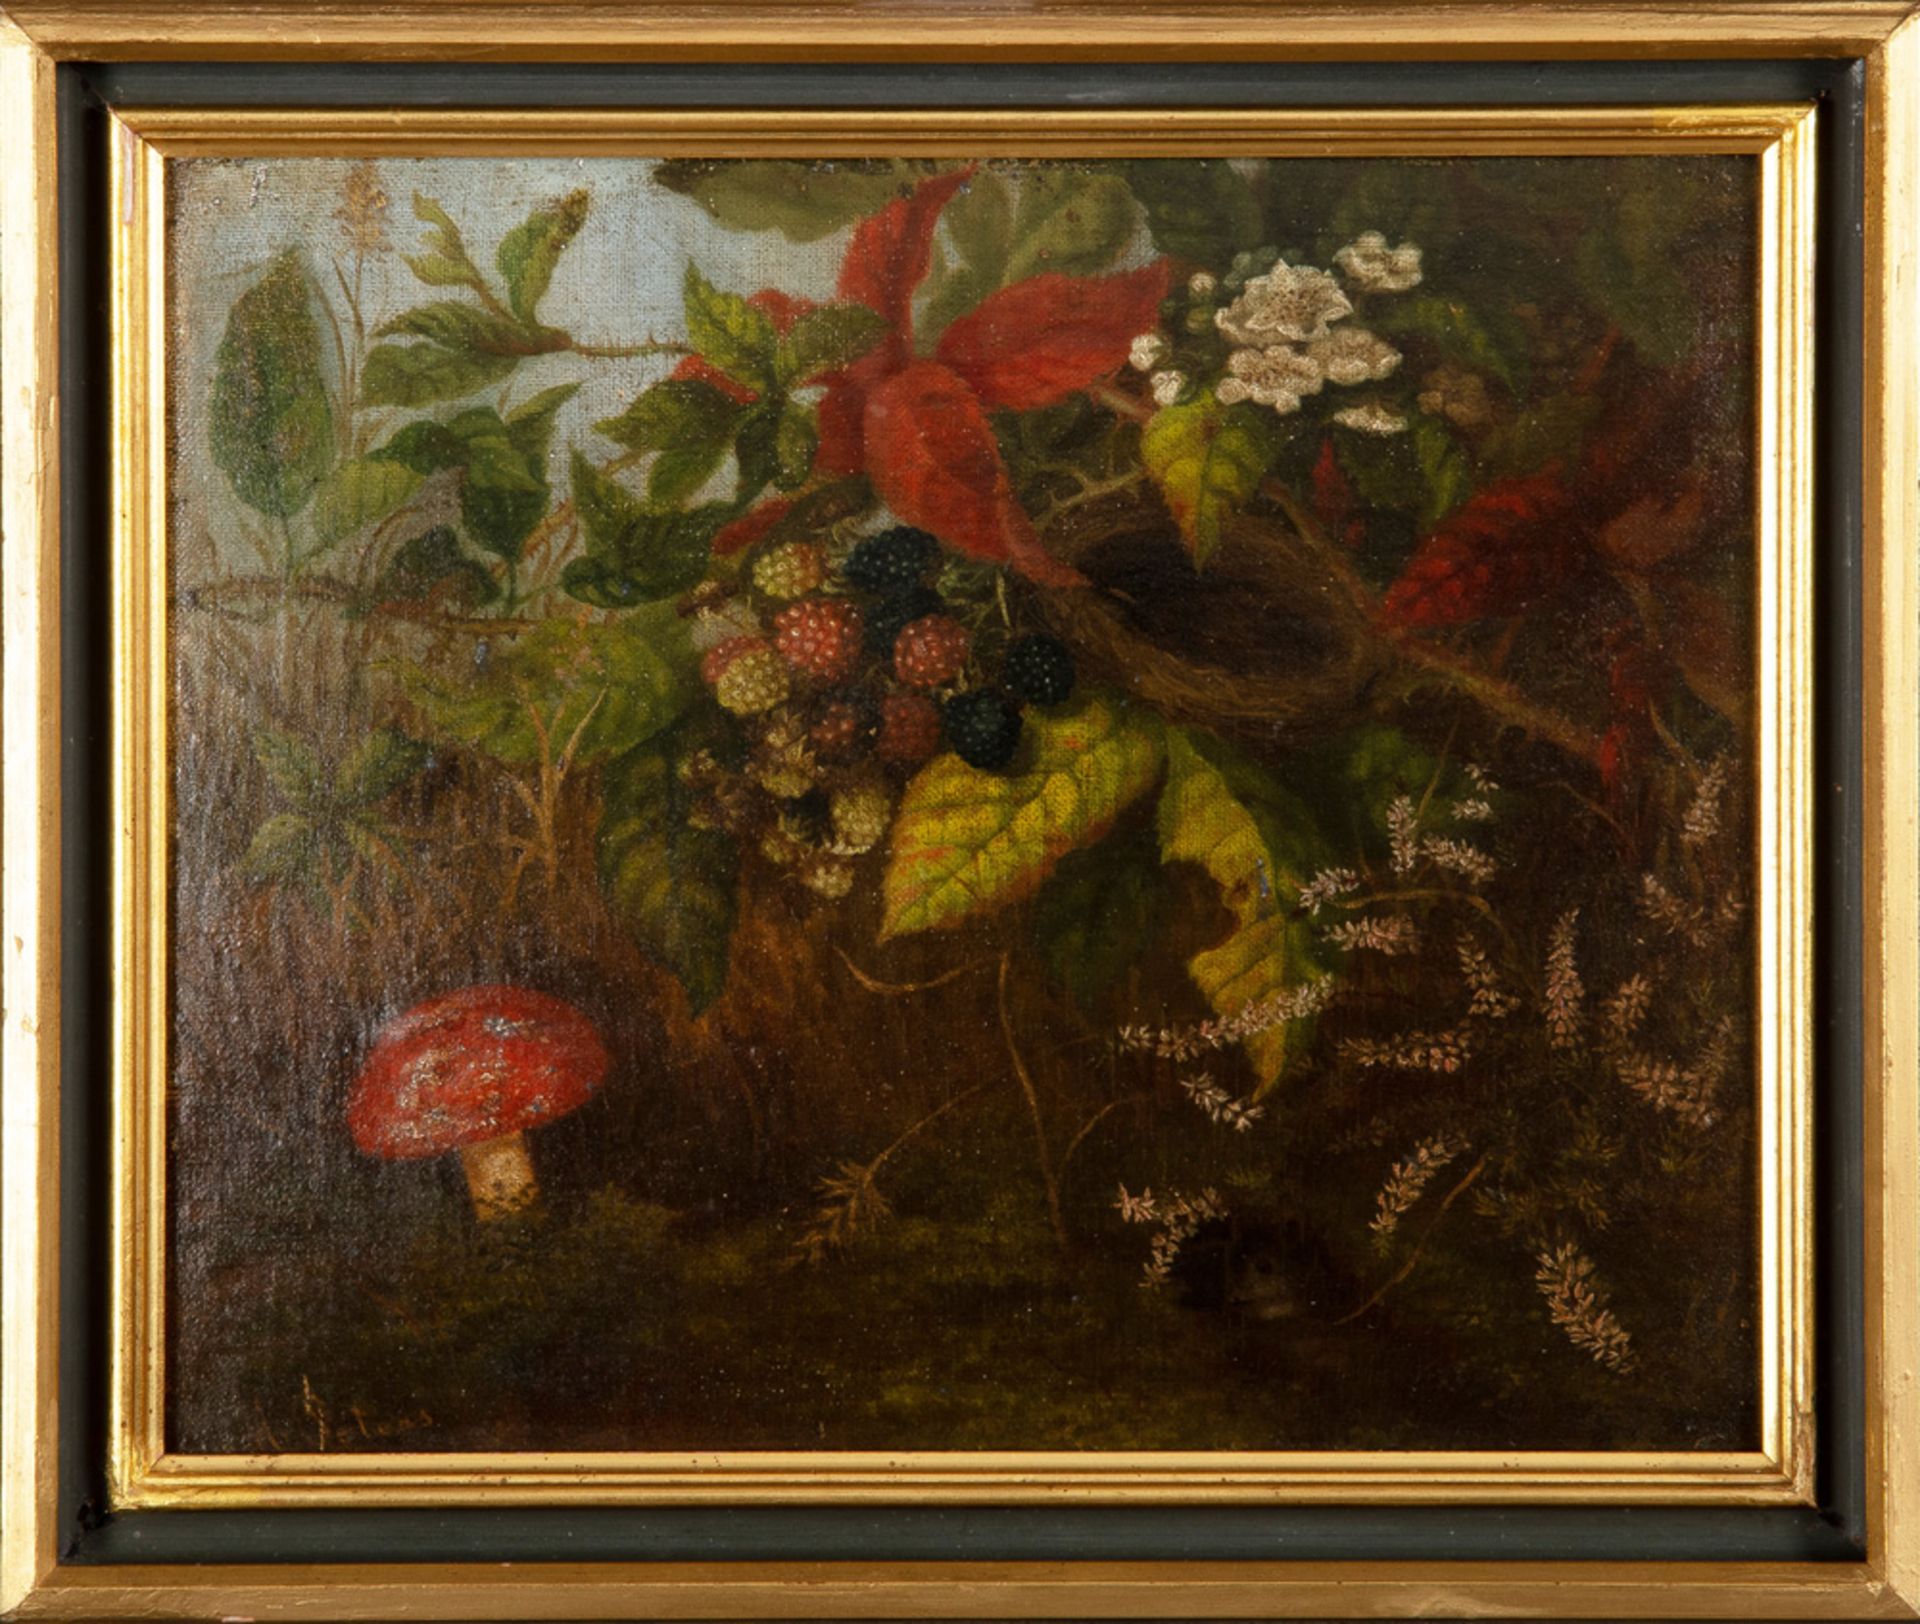 A. Peters (Maler des 19. Jhs.). Stillleben mit Blumen, Obst, Pilzen und Maus. Öl/Lw., doubliert,